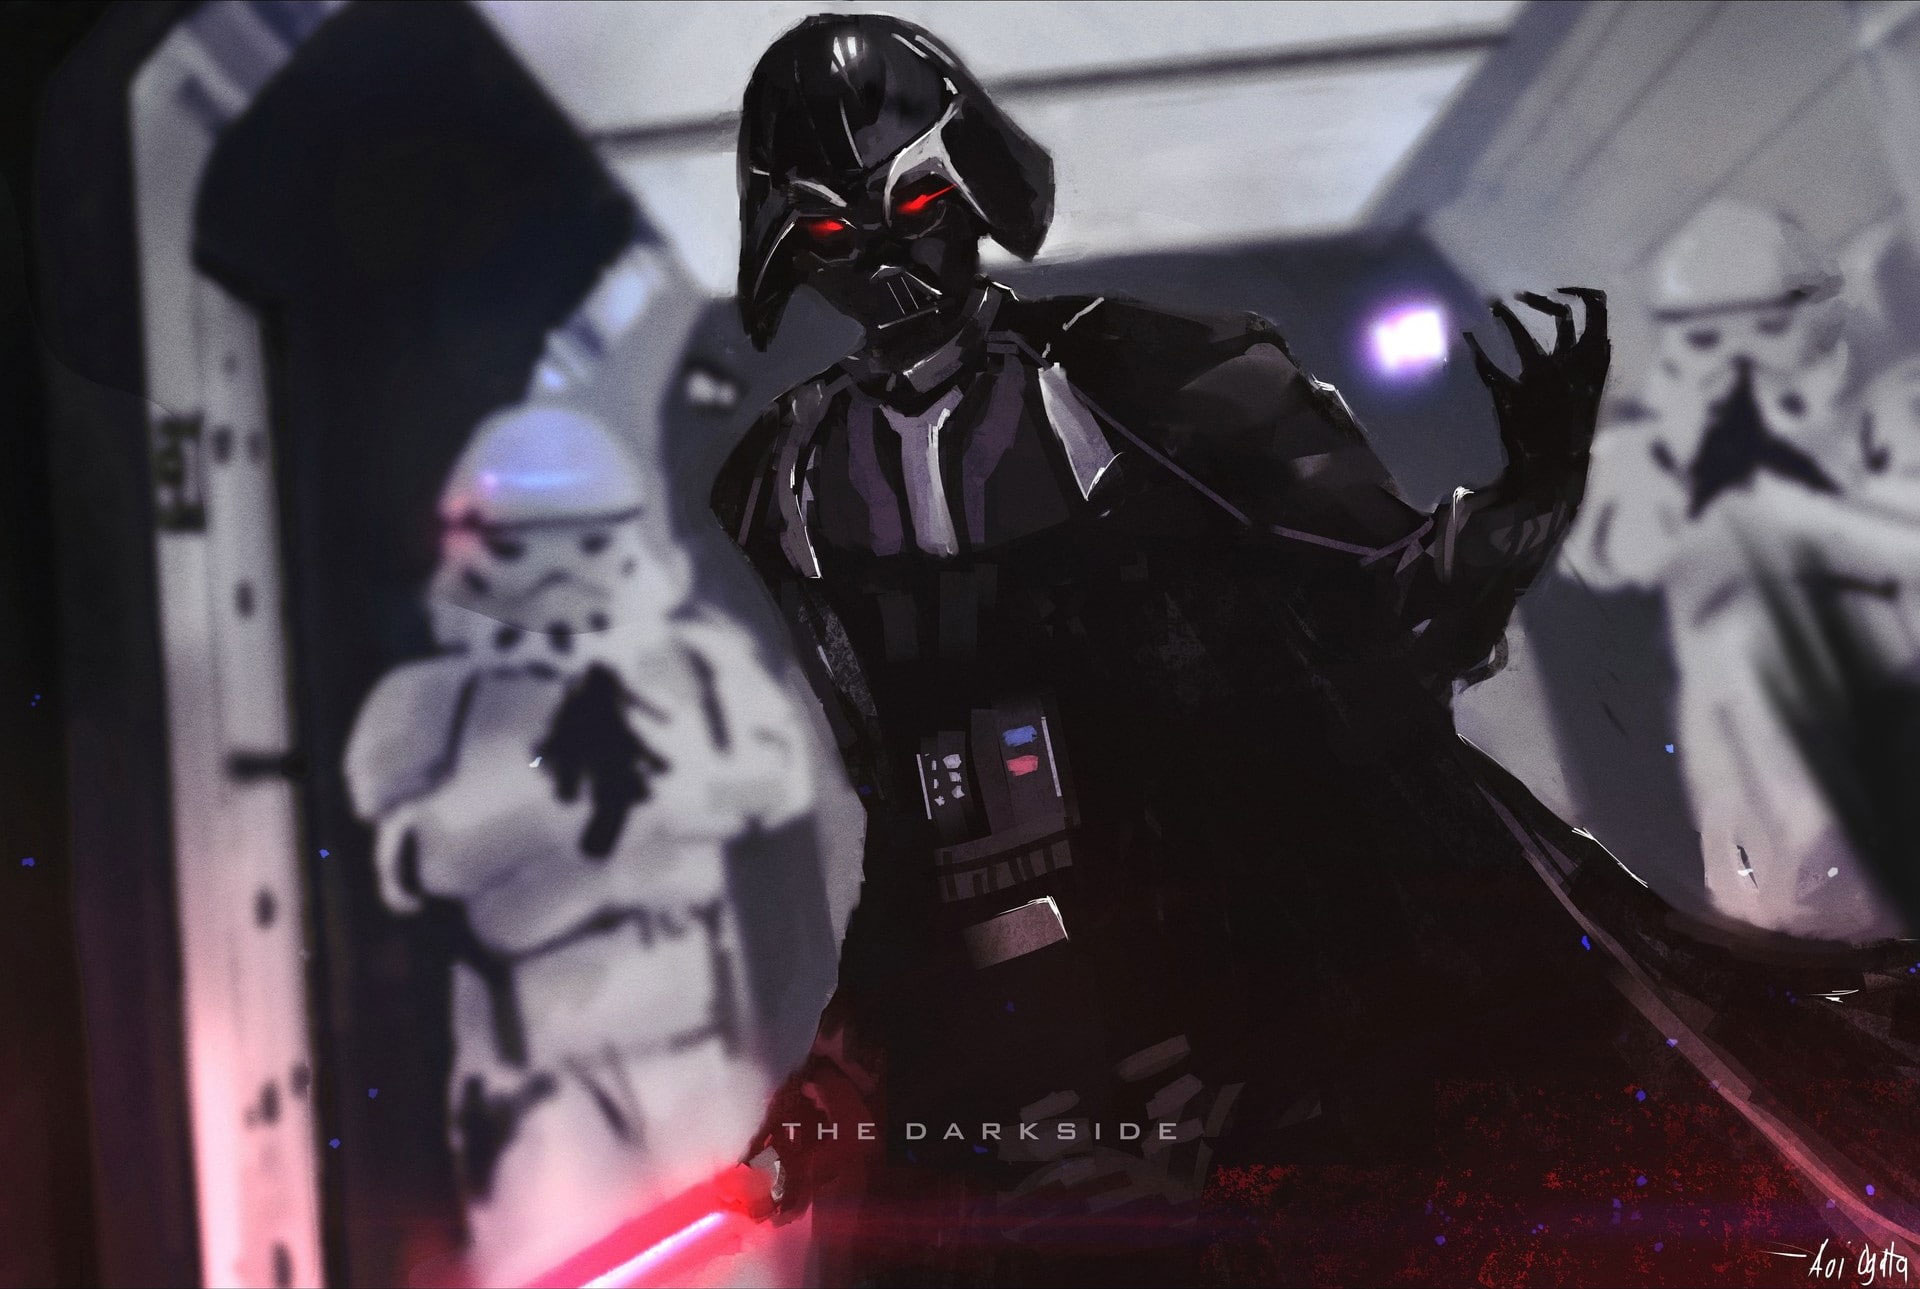 Darth Vader Mask Wallpapers